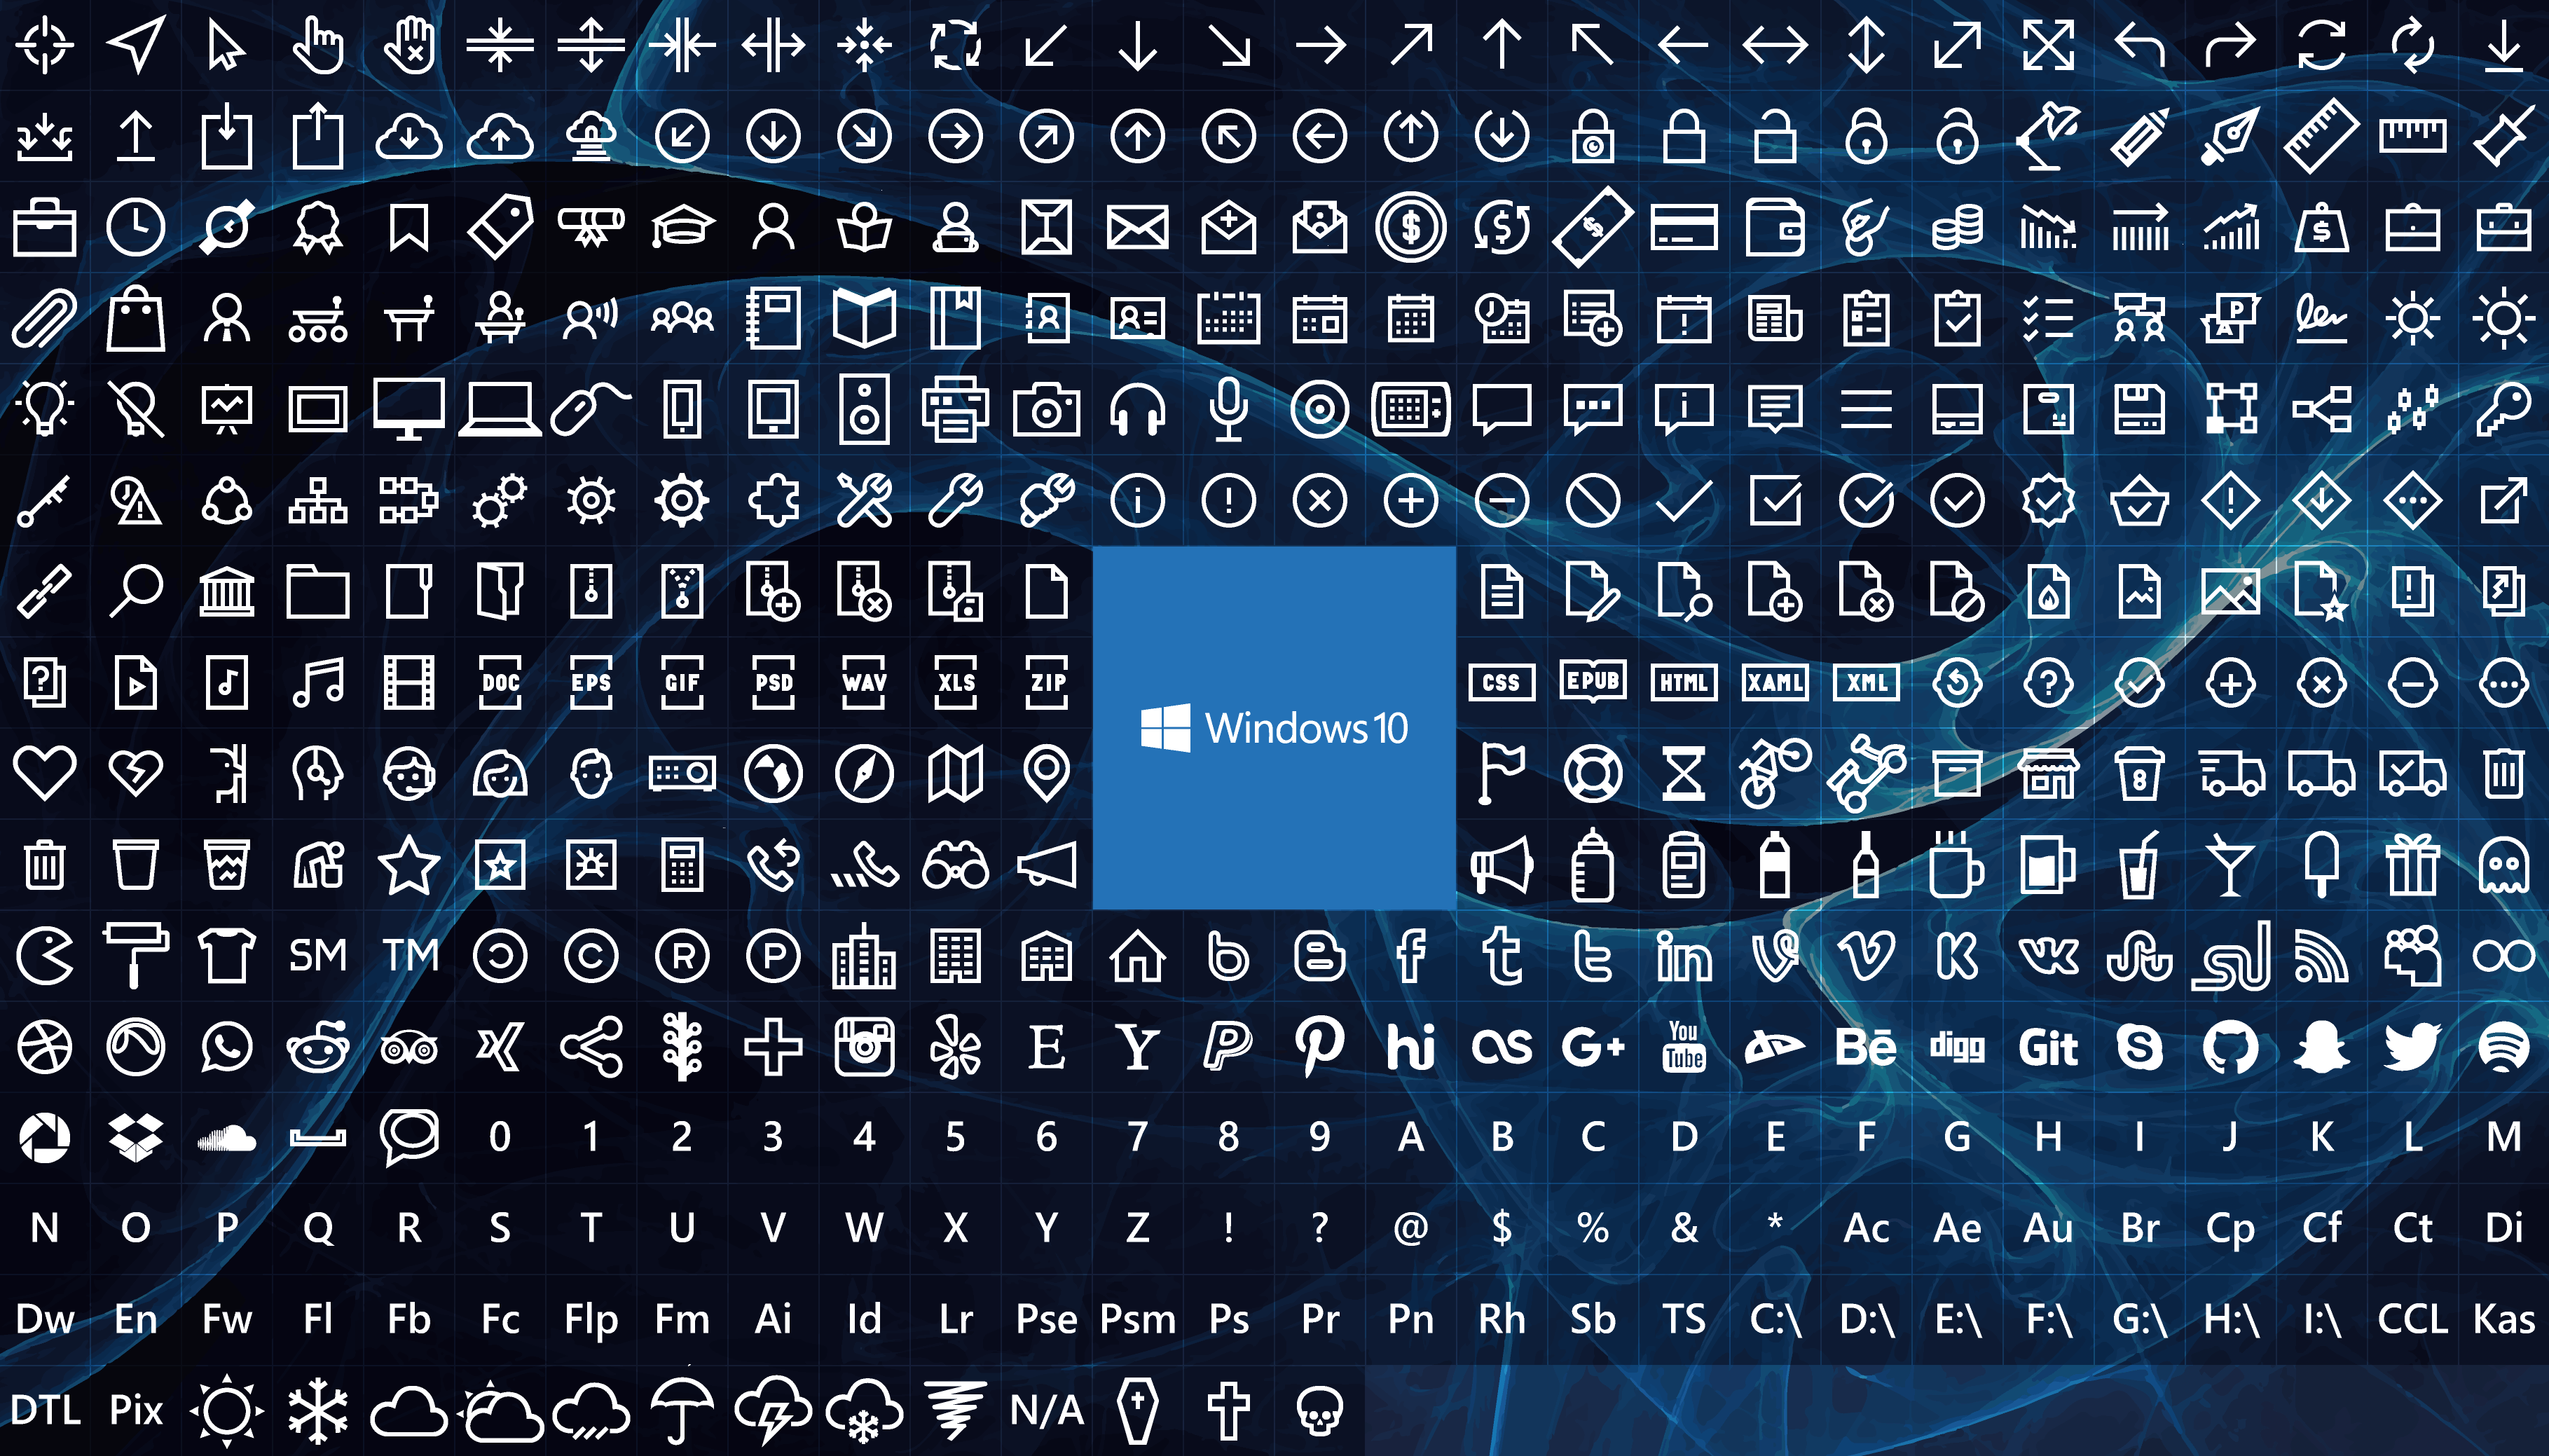 Системные значки windows 10. Иконки для Windows 10. Иконки ярлыков виндовс 10. Иконки для приложений Windows 10. Значок Windows 10.